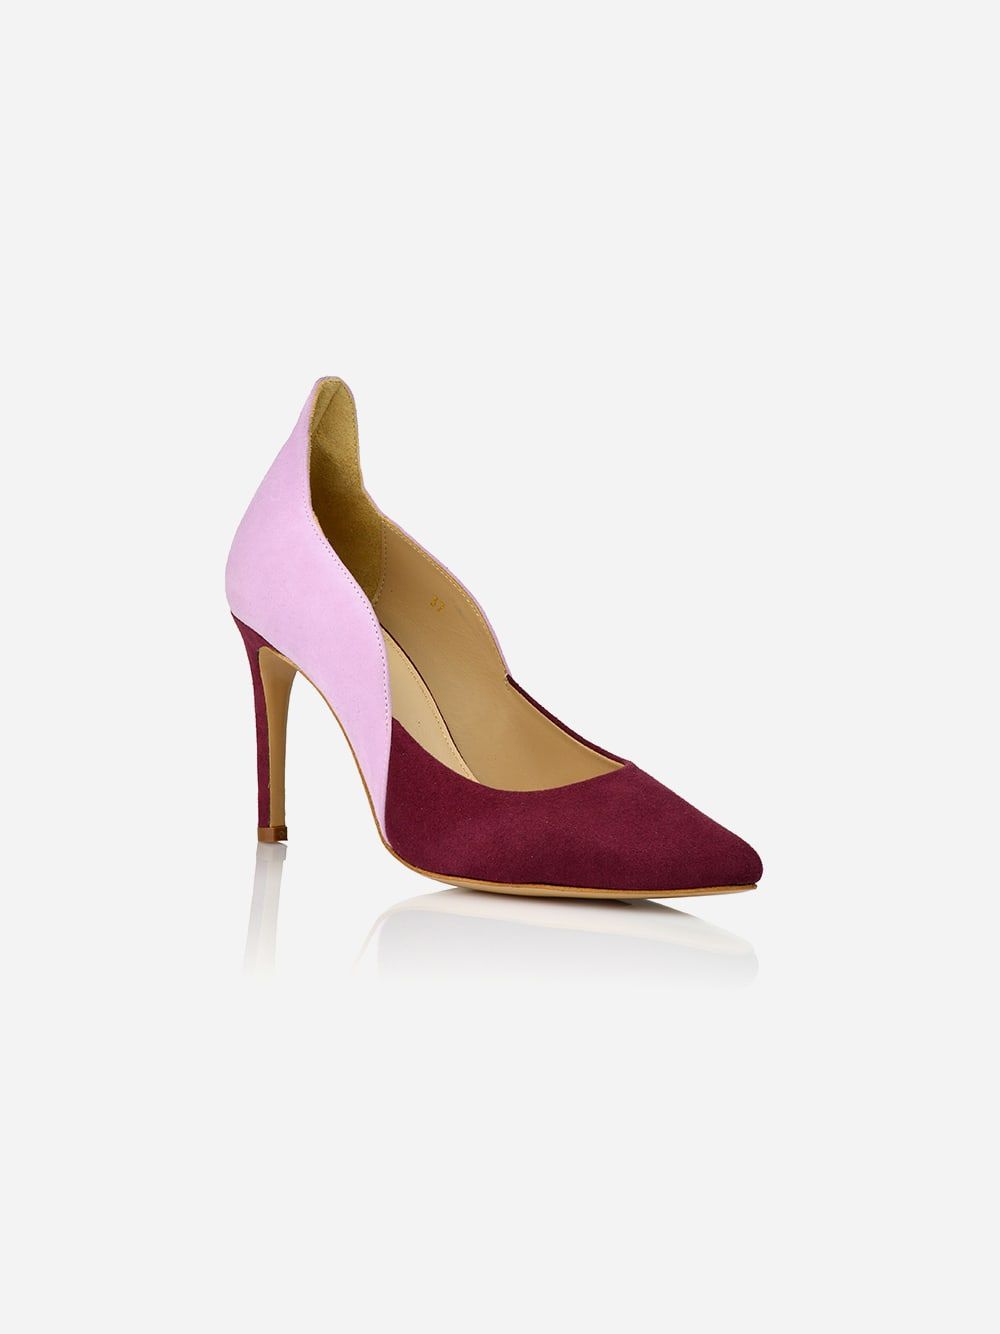 Sapato de Salto Alto Rosa e Bordeaux | JJ Heitor